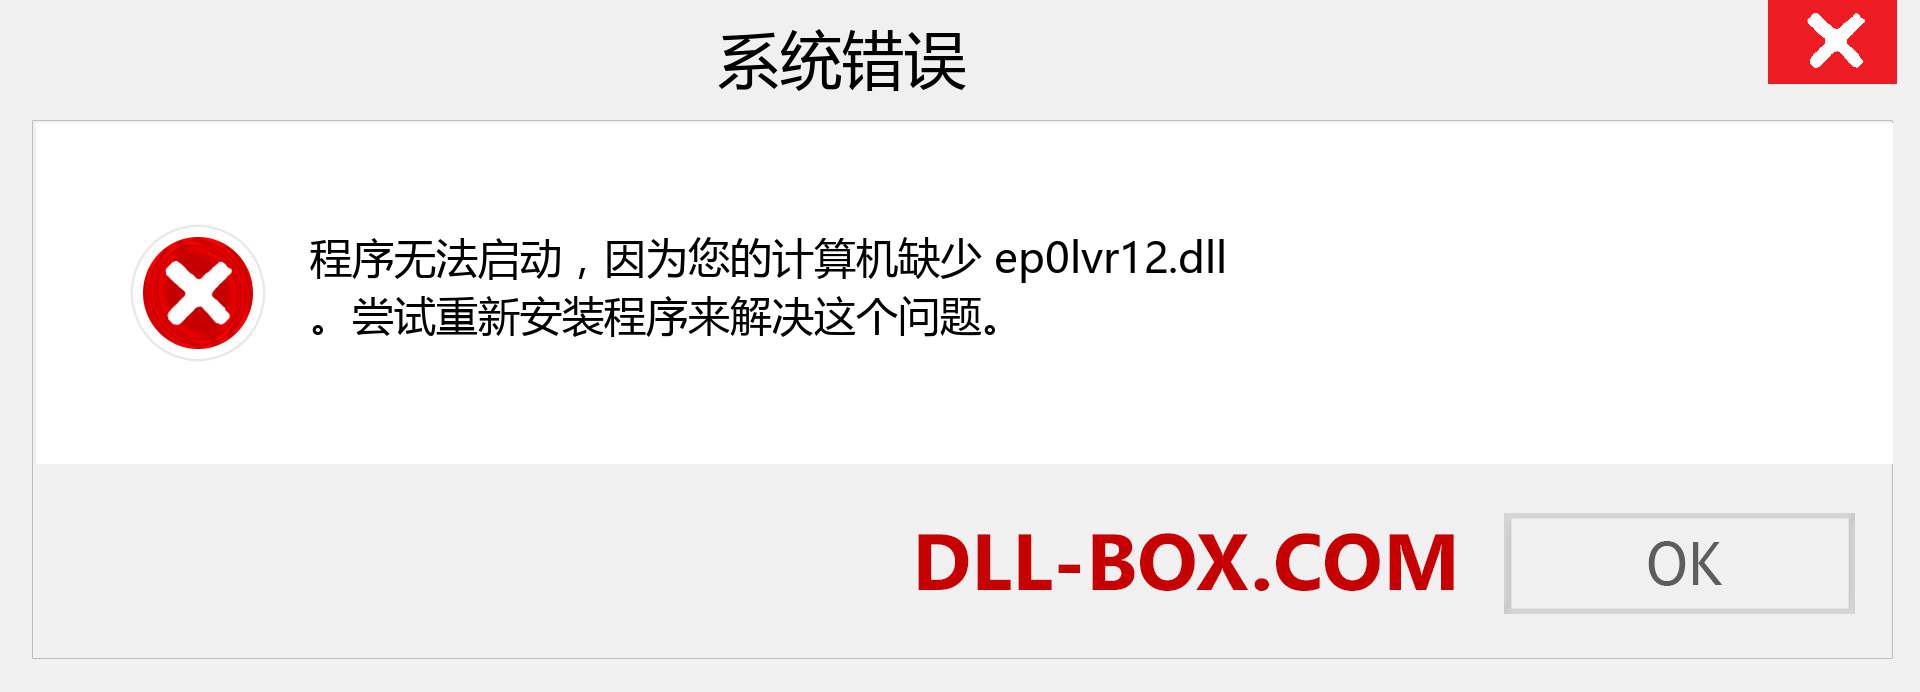 ep0lvr12.dll 文件丢失？。 适用于 Windows 7、8、10 的下载 - 修复 Windows、照片、图像上的 ep0lvr12 dll 丢失错误